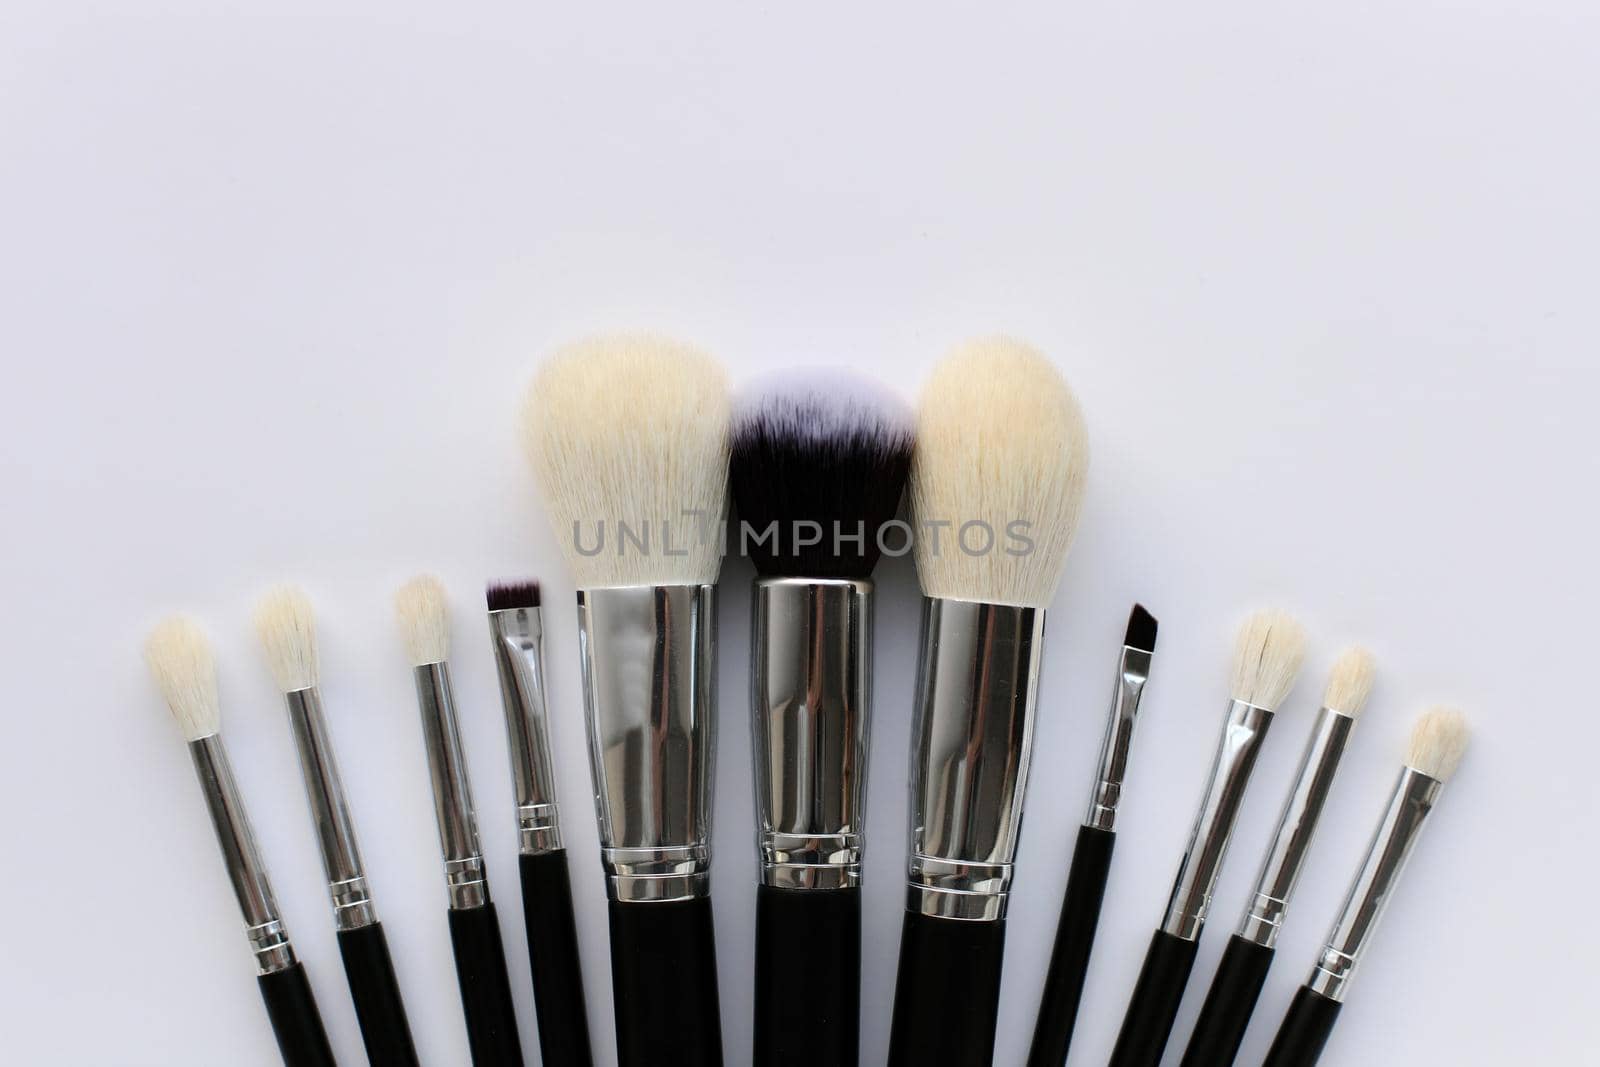 Professional makeup brush set